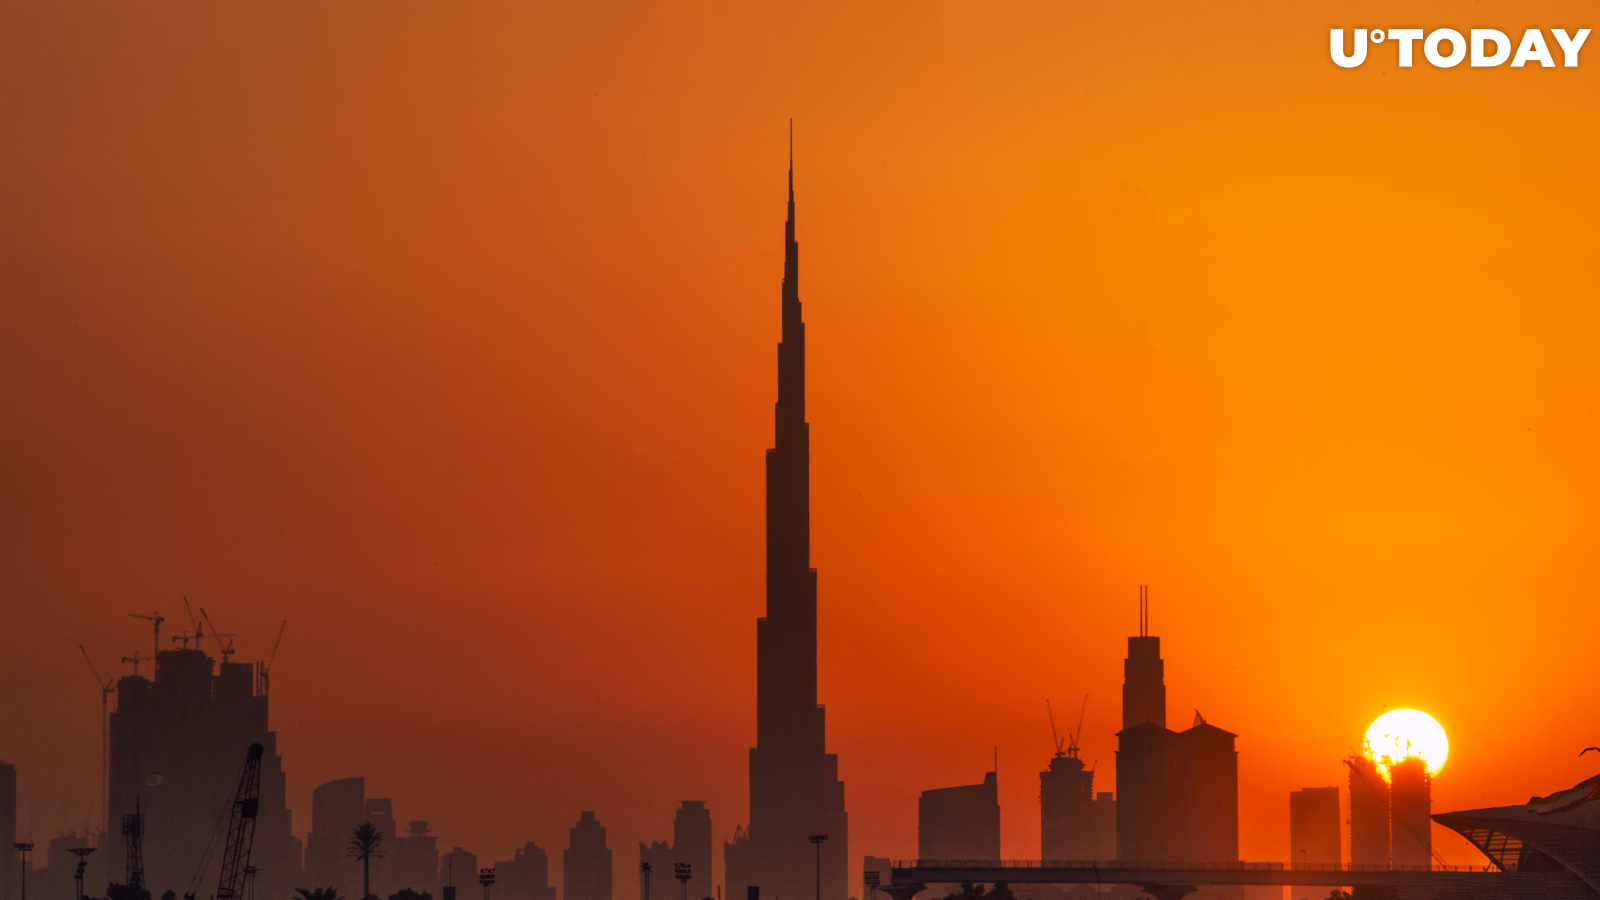 Floki Inu to Be Promoted on Burj Khalifa